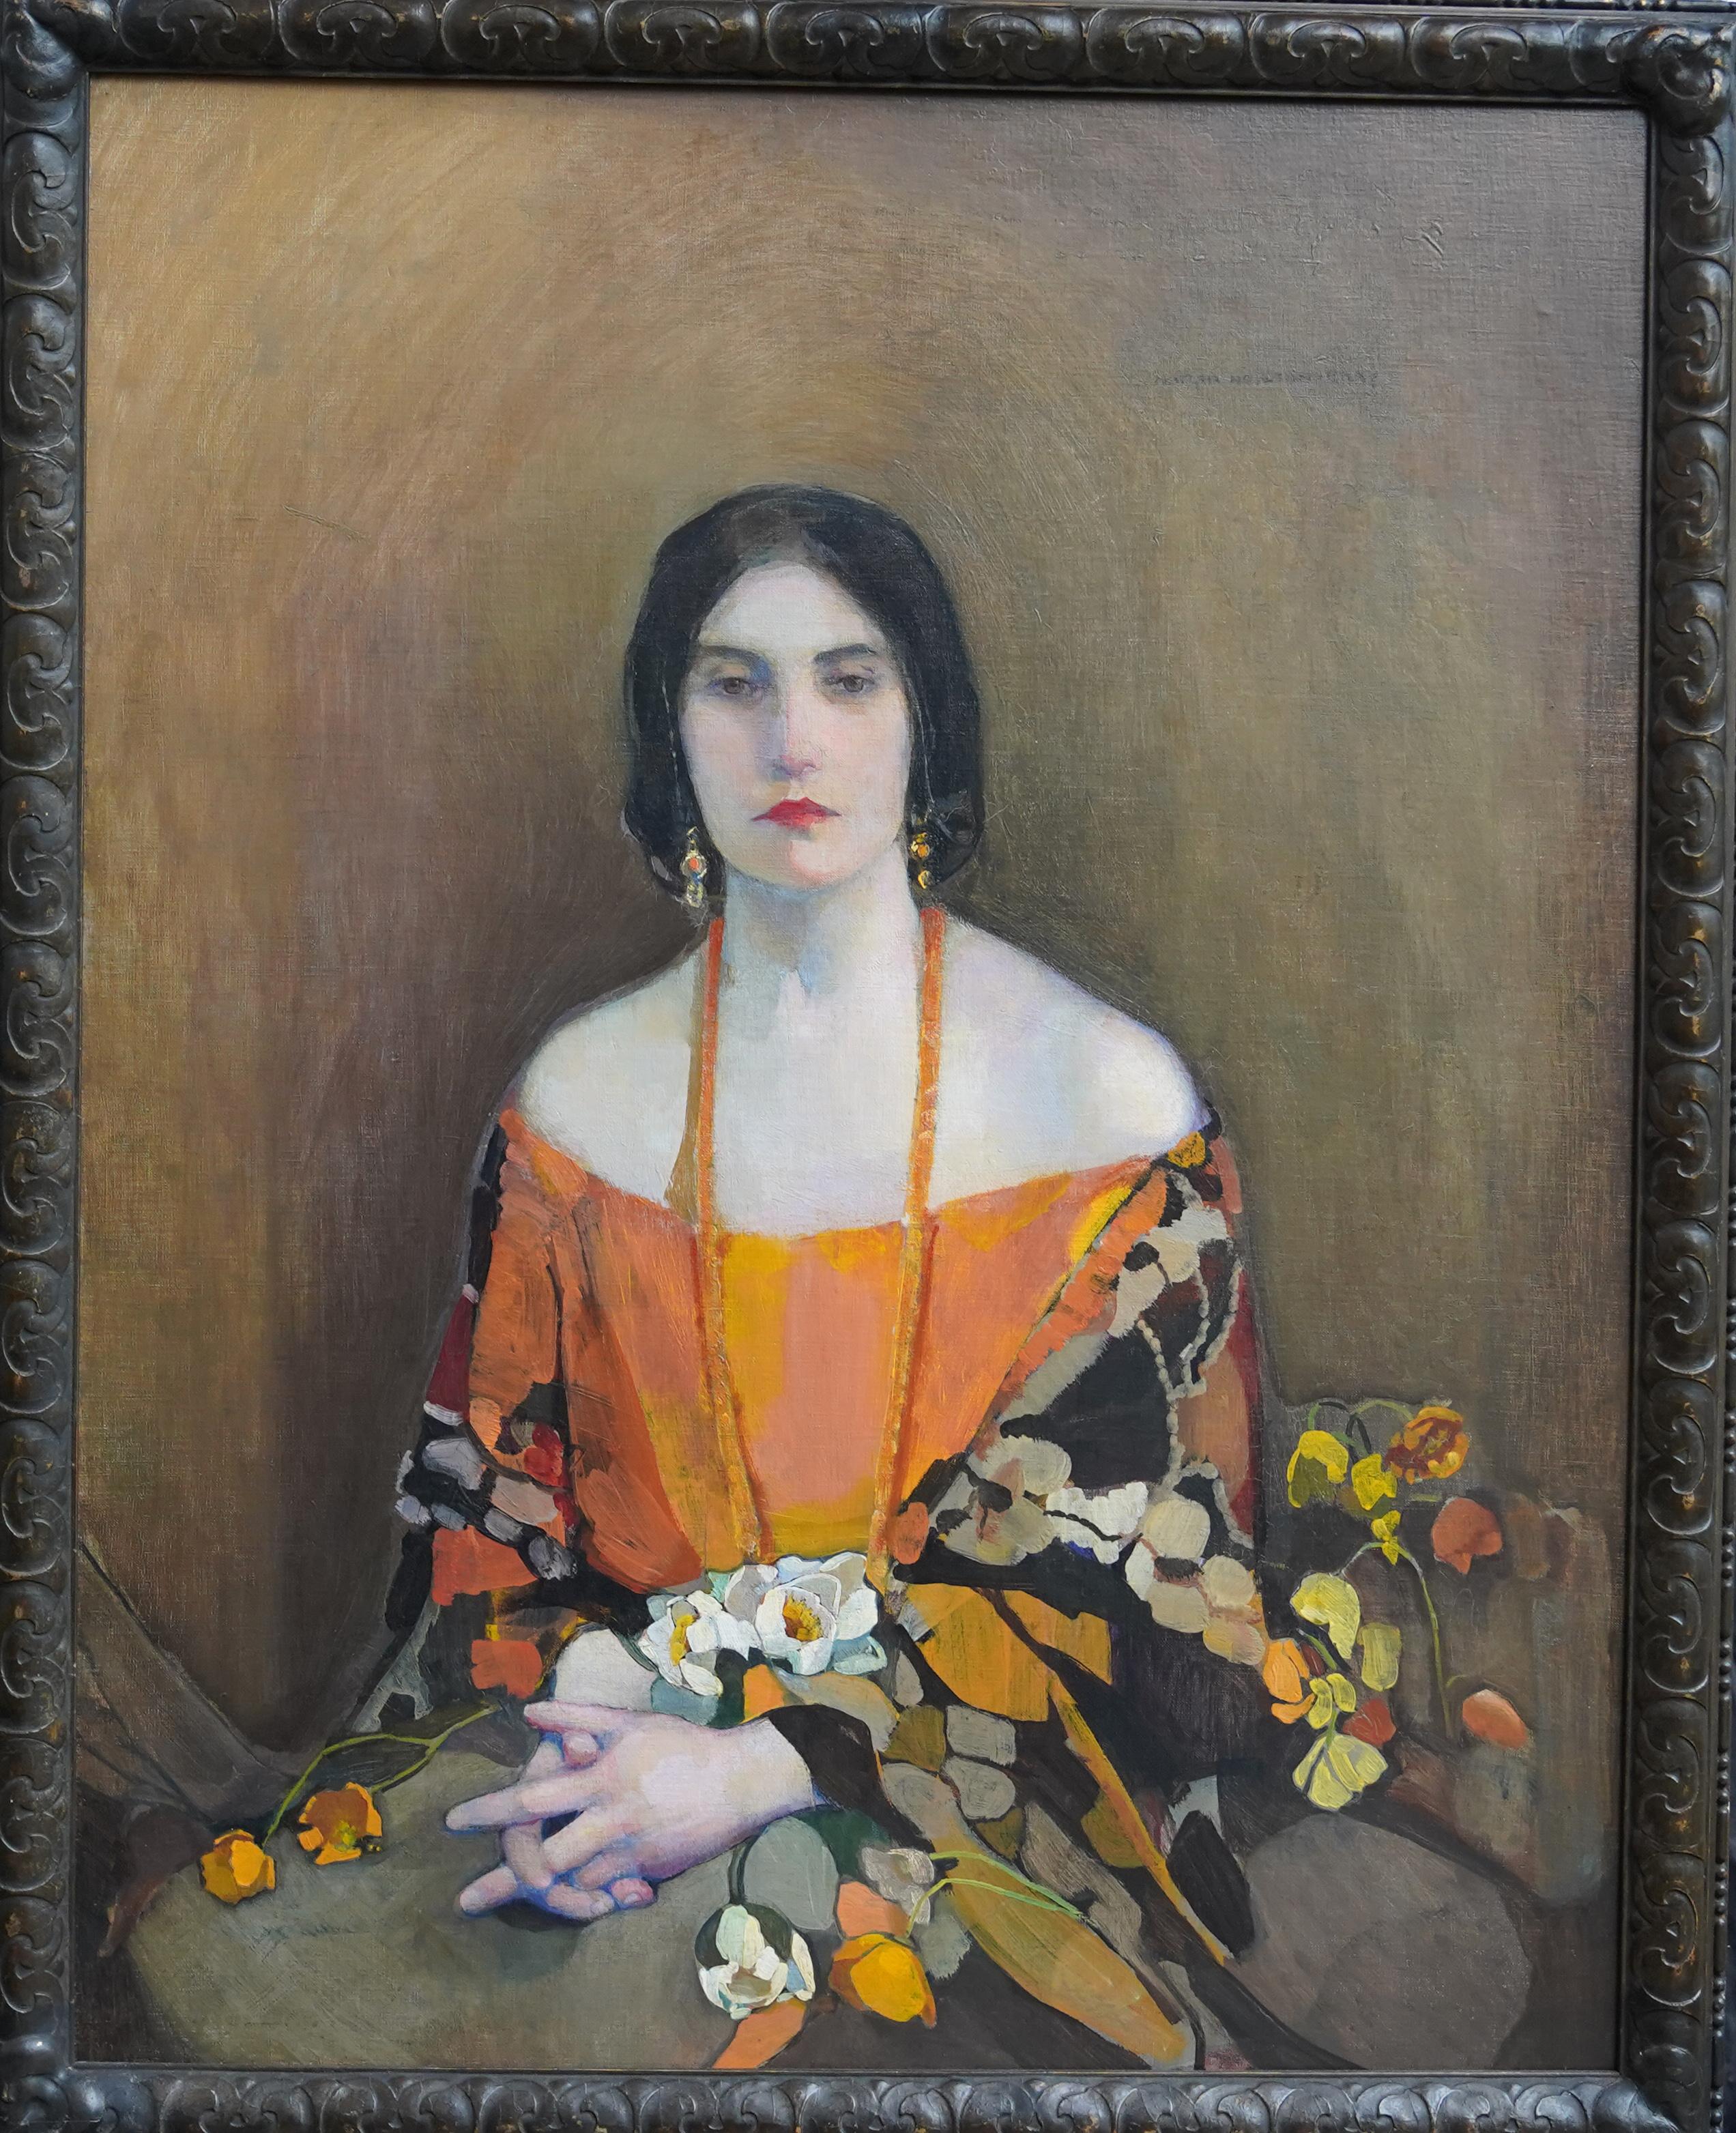 Exotique - peinture à l'huile écossaise des années 1920 exposée 'Glasgow Girl' portrait d'art